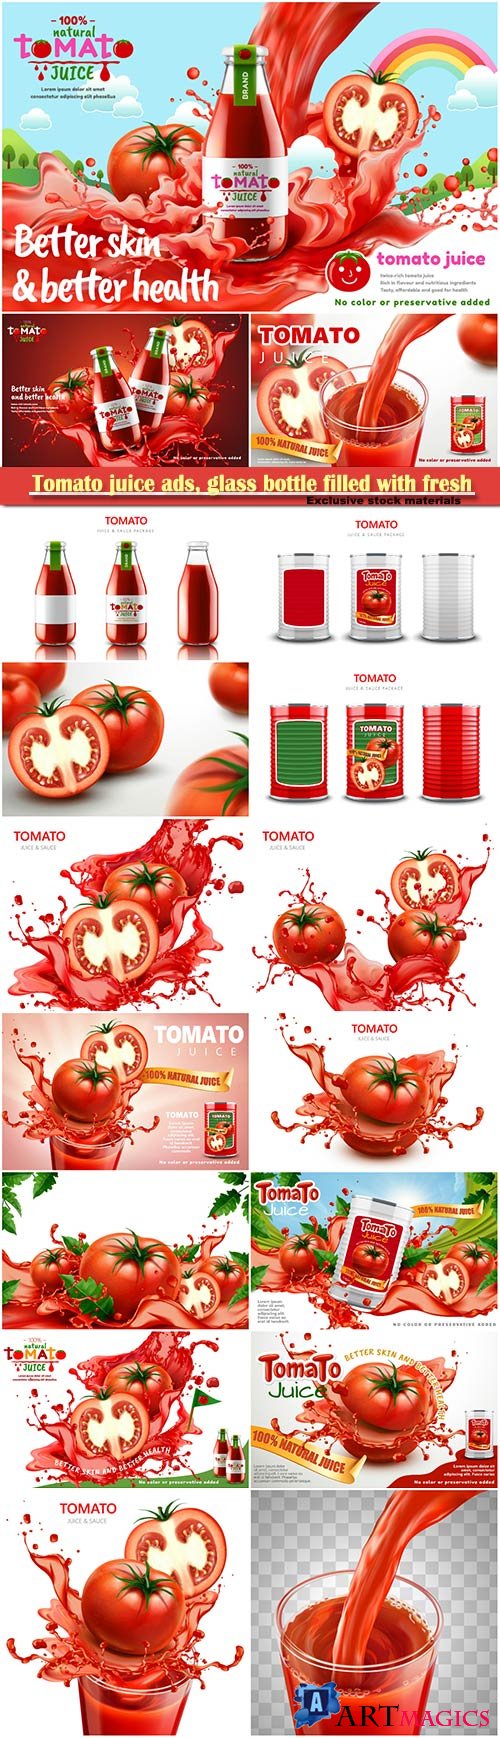 Tomato juice ads, glass bottle filled with fresh tomato juice with splashing juice, 3d illustration